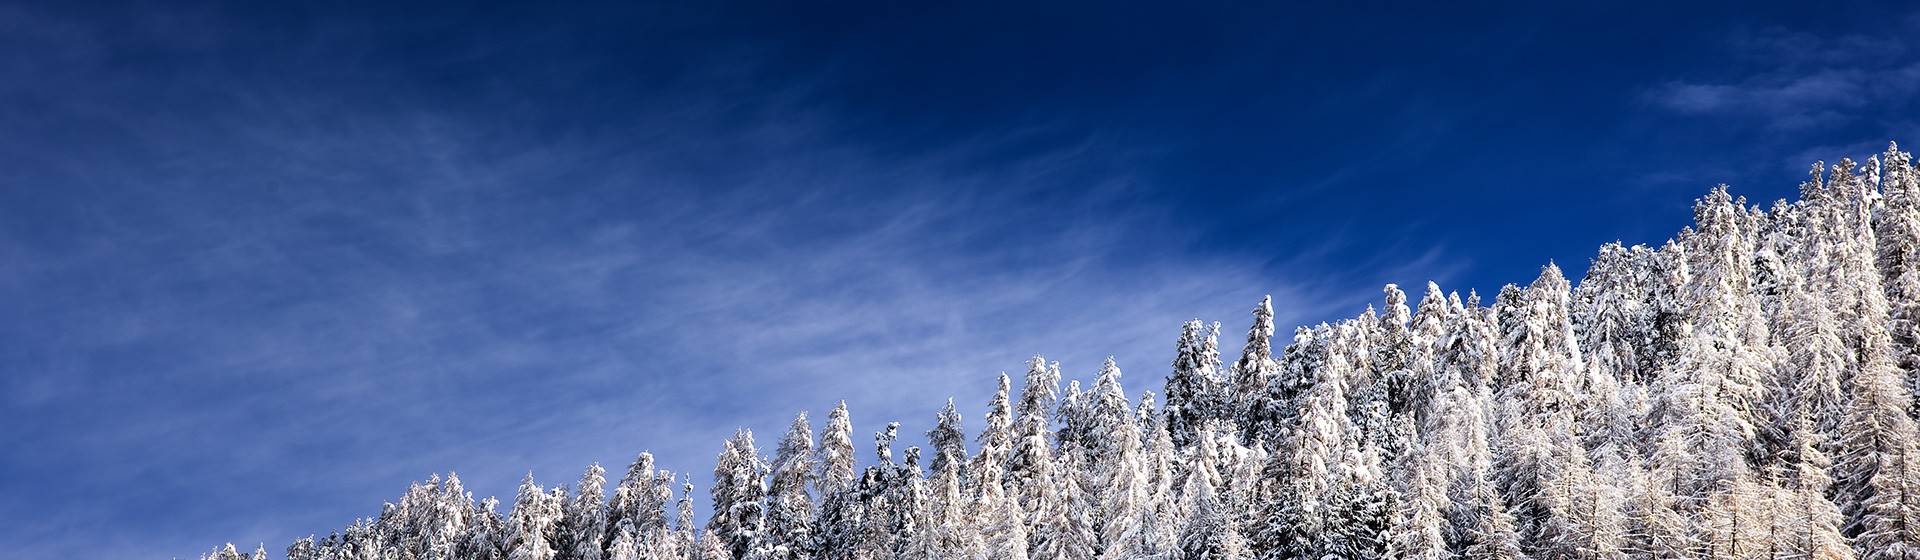 Schneebedeckte Bäume bei blauem Himmel